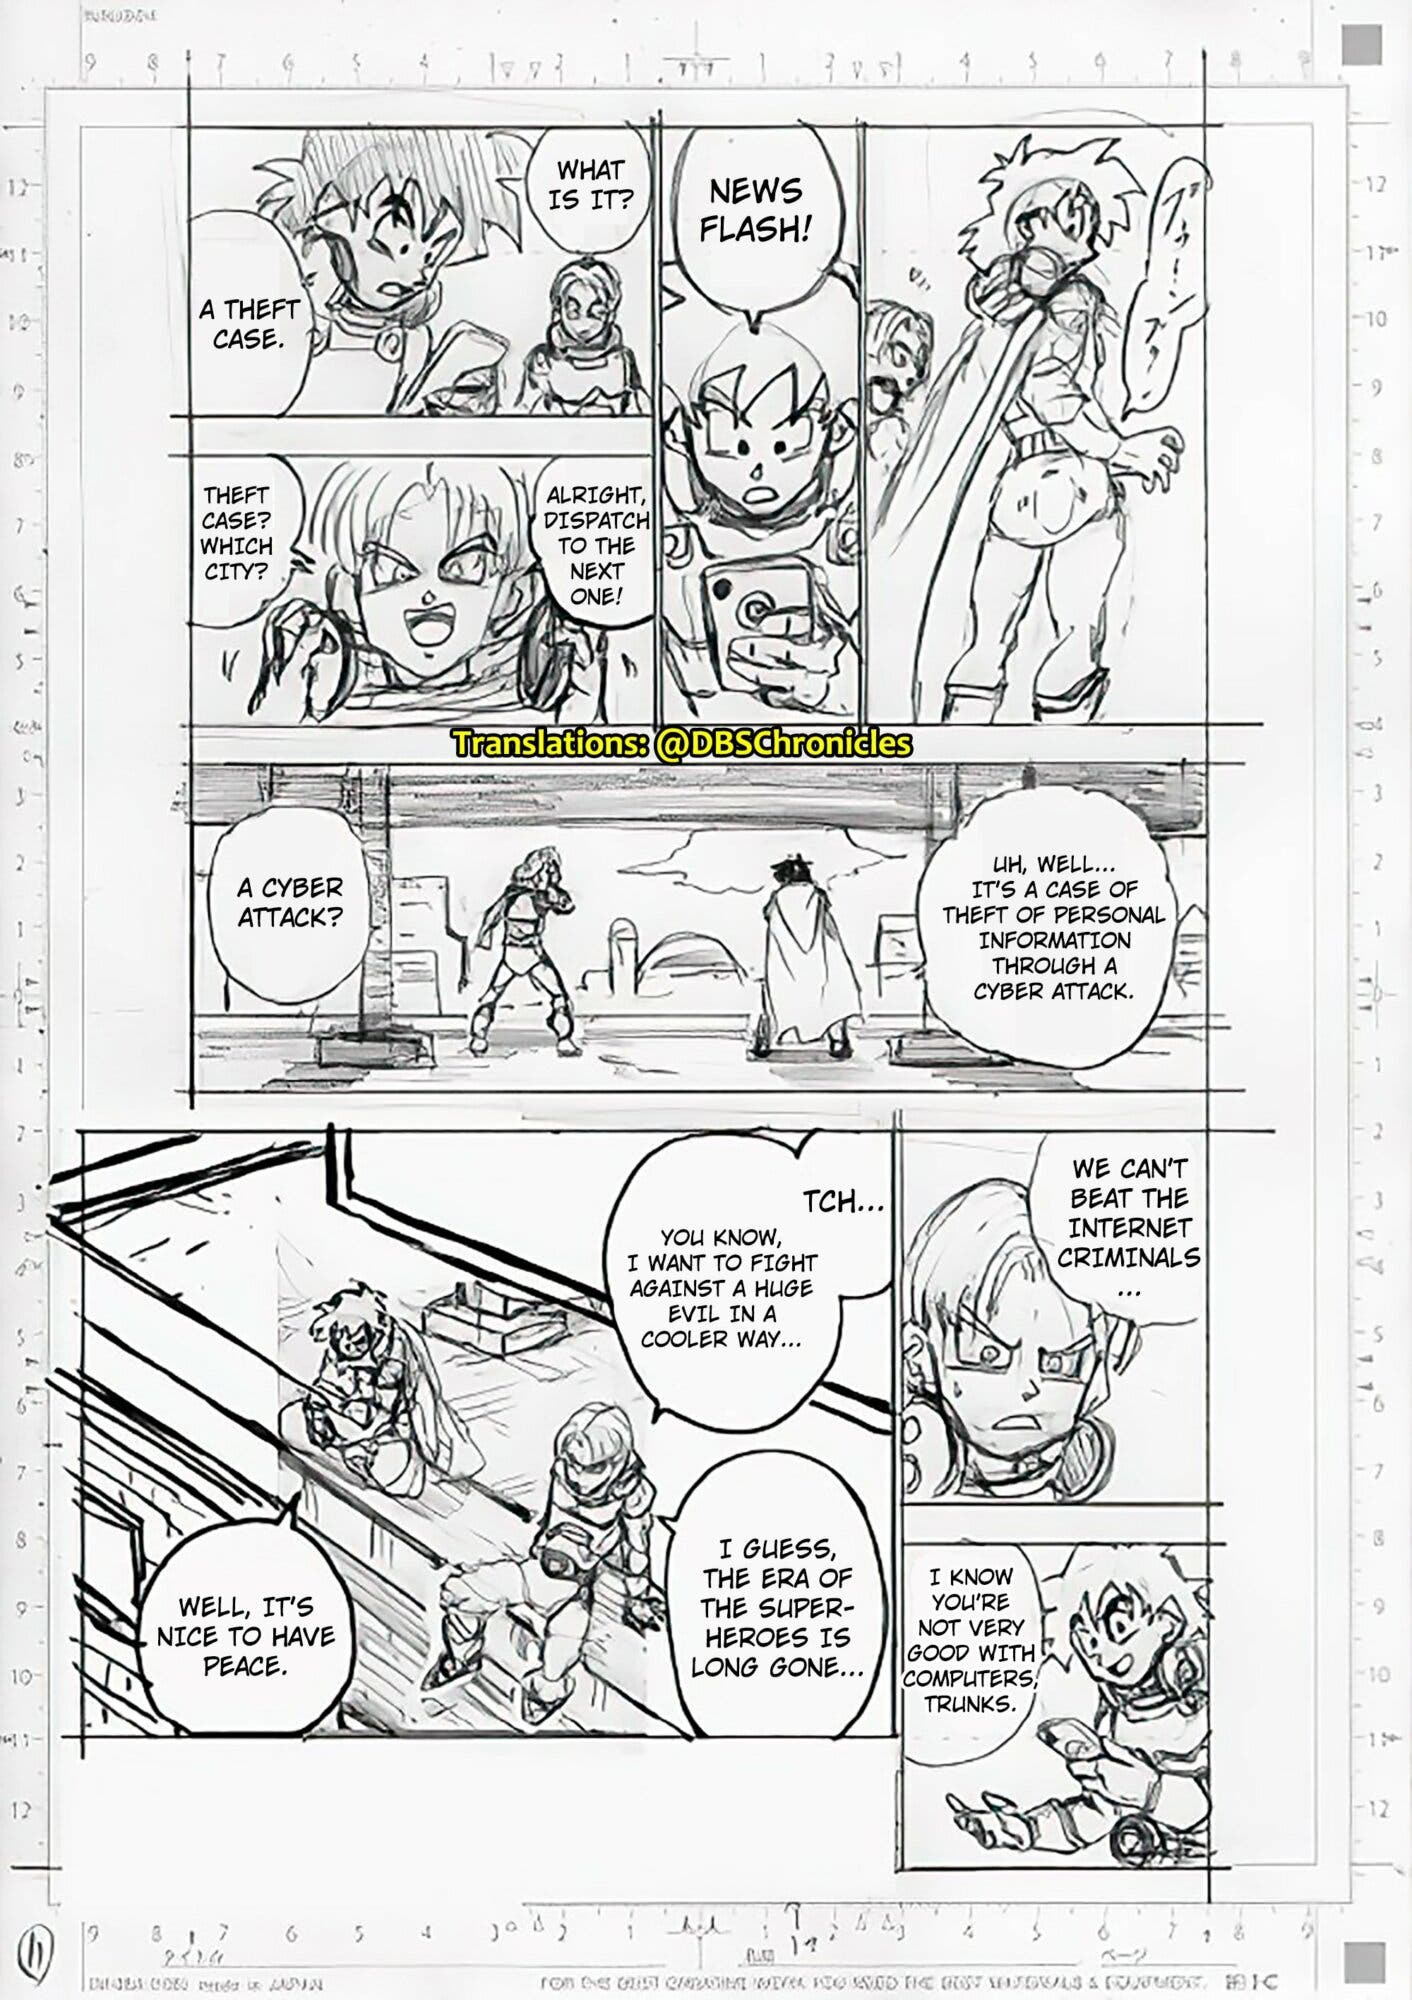 Dragon Ball Super Manga capítulo 88: fecha y hora de estreno del nuevo  episodio con Goten y Trunks en México y LATAM